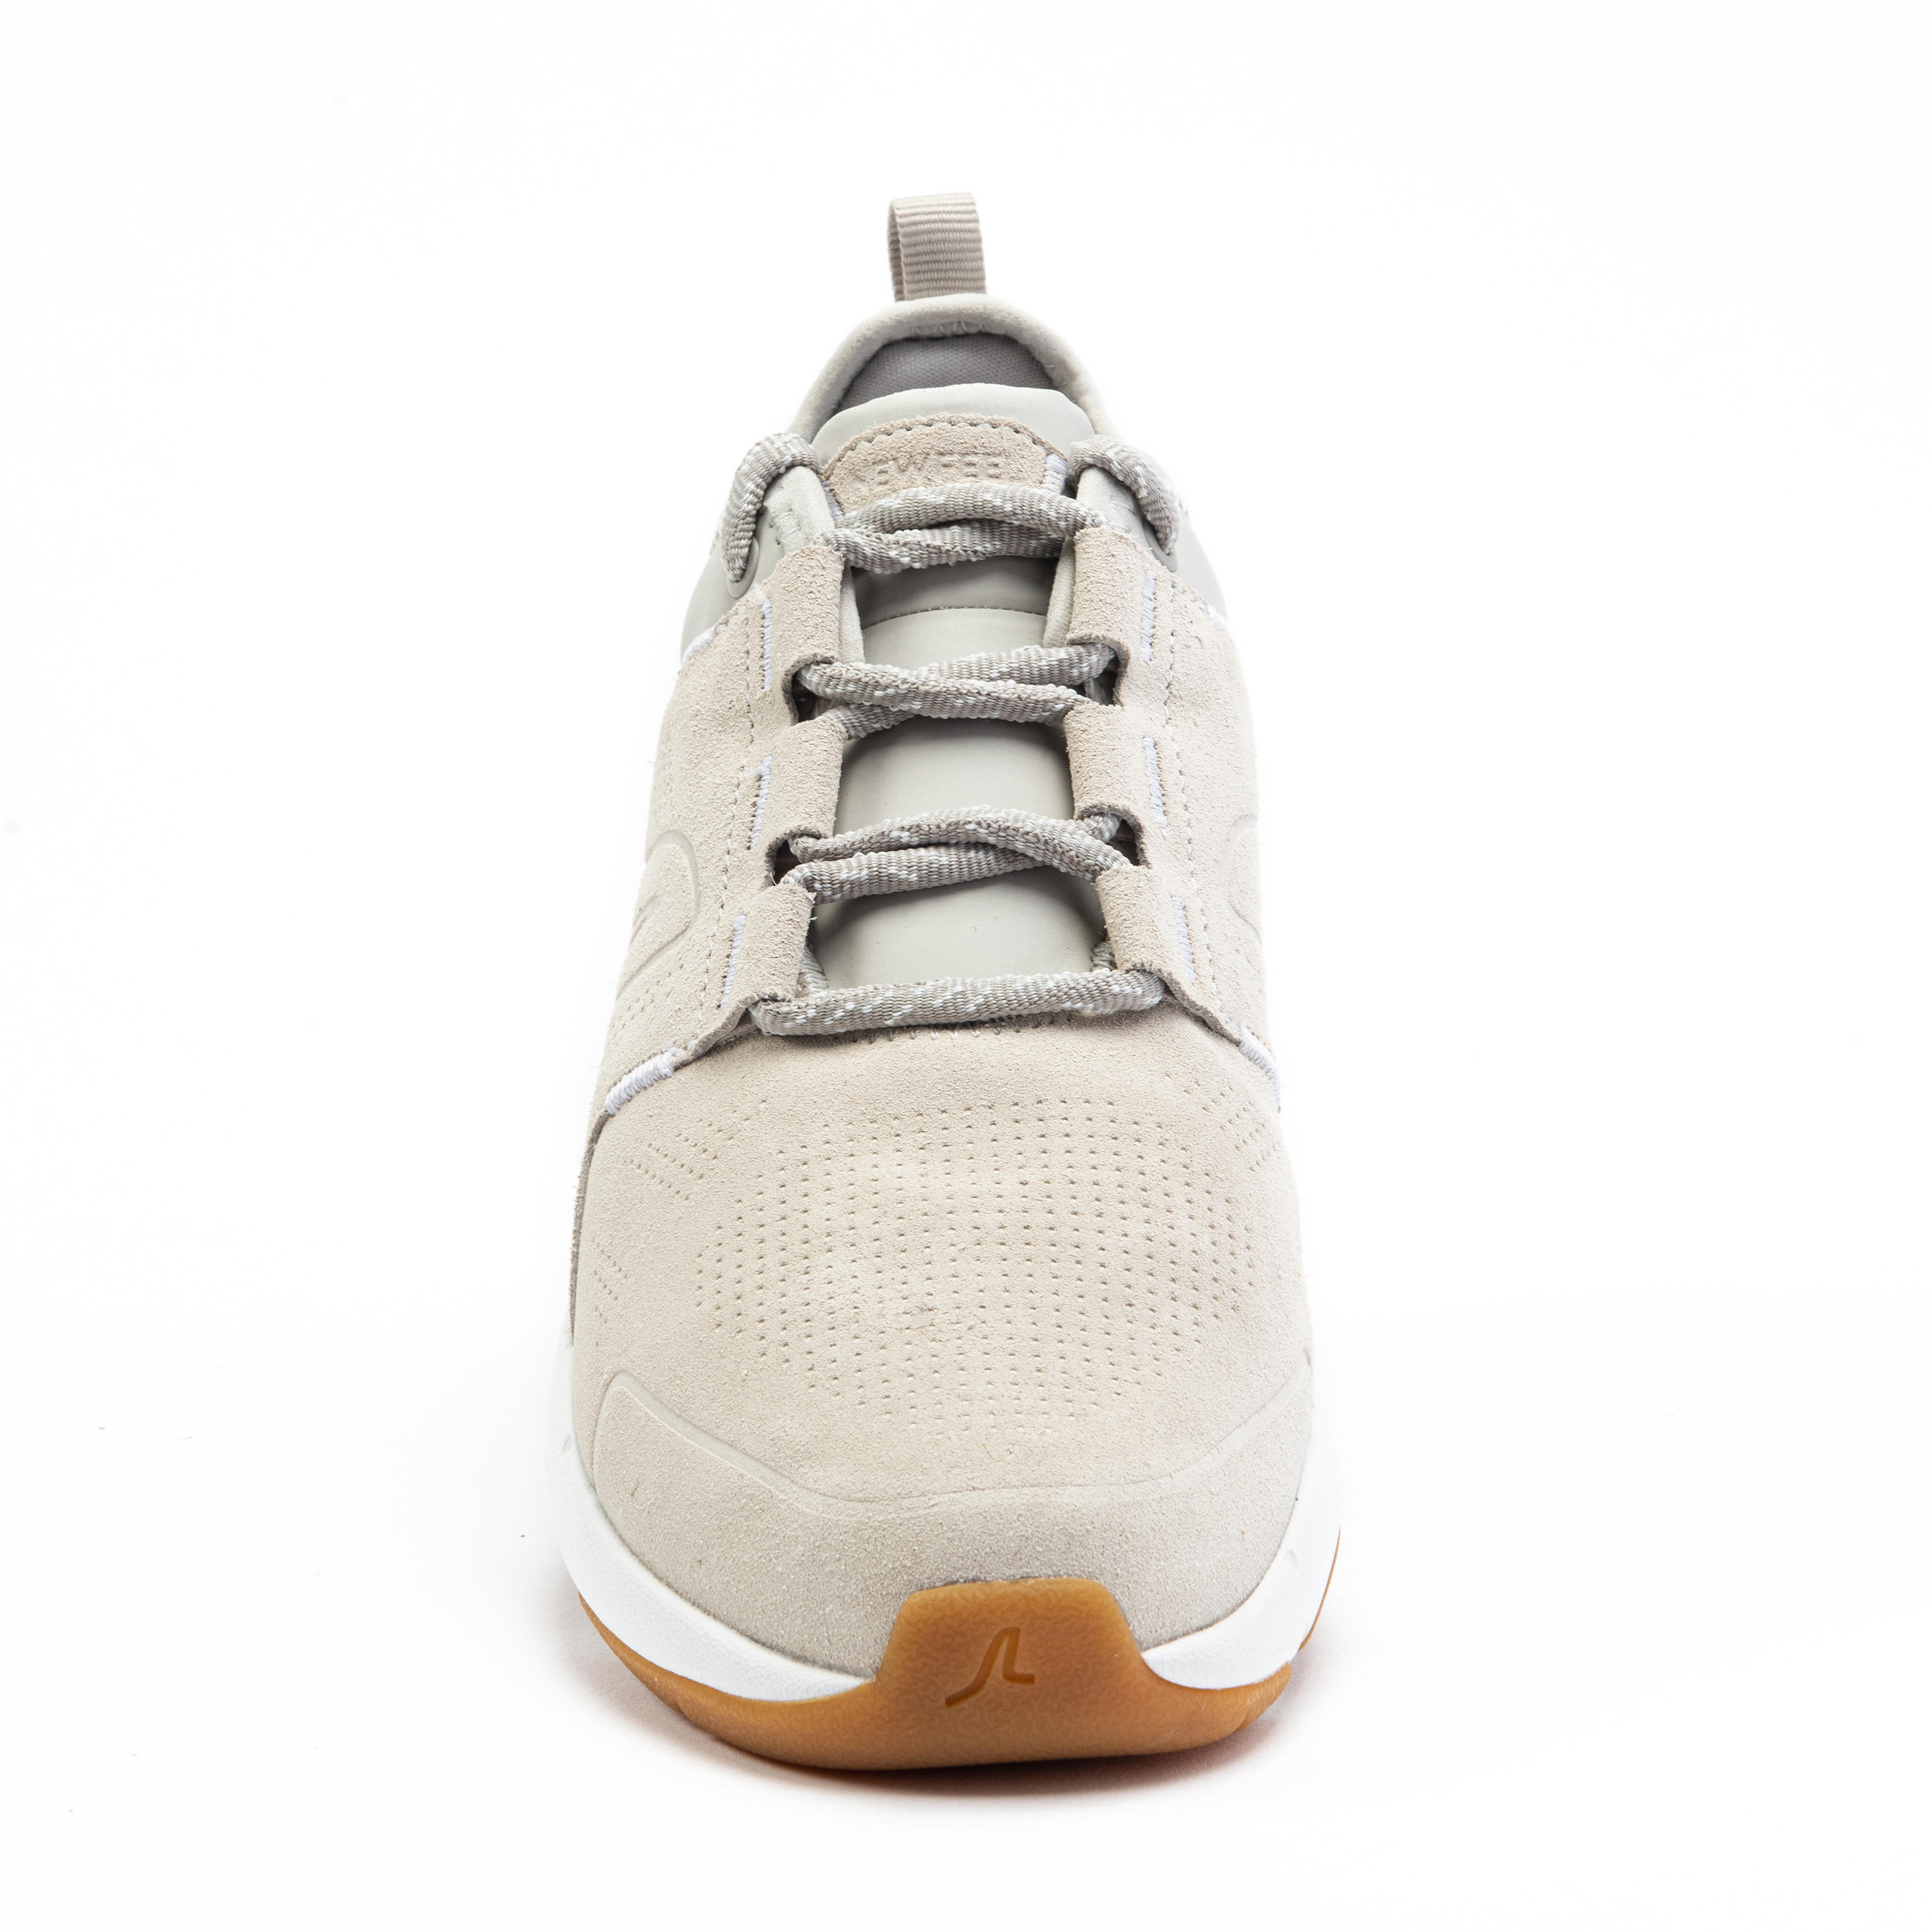 Women's City Walking Shoes Actiwalk Comfort Leather - beige 15/32